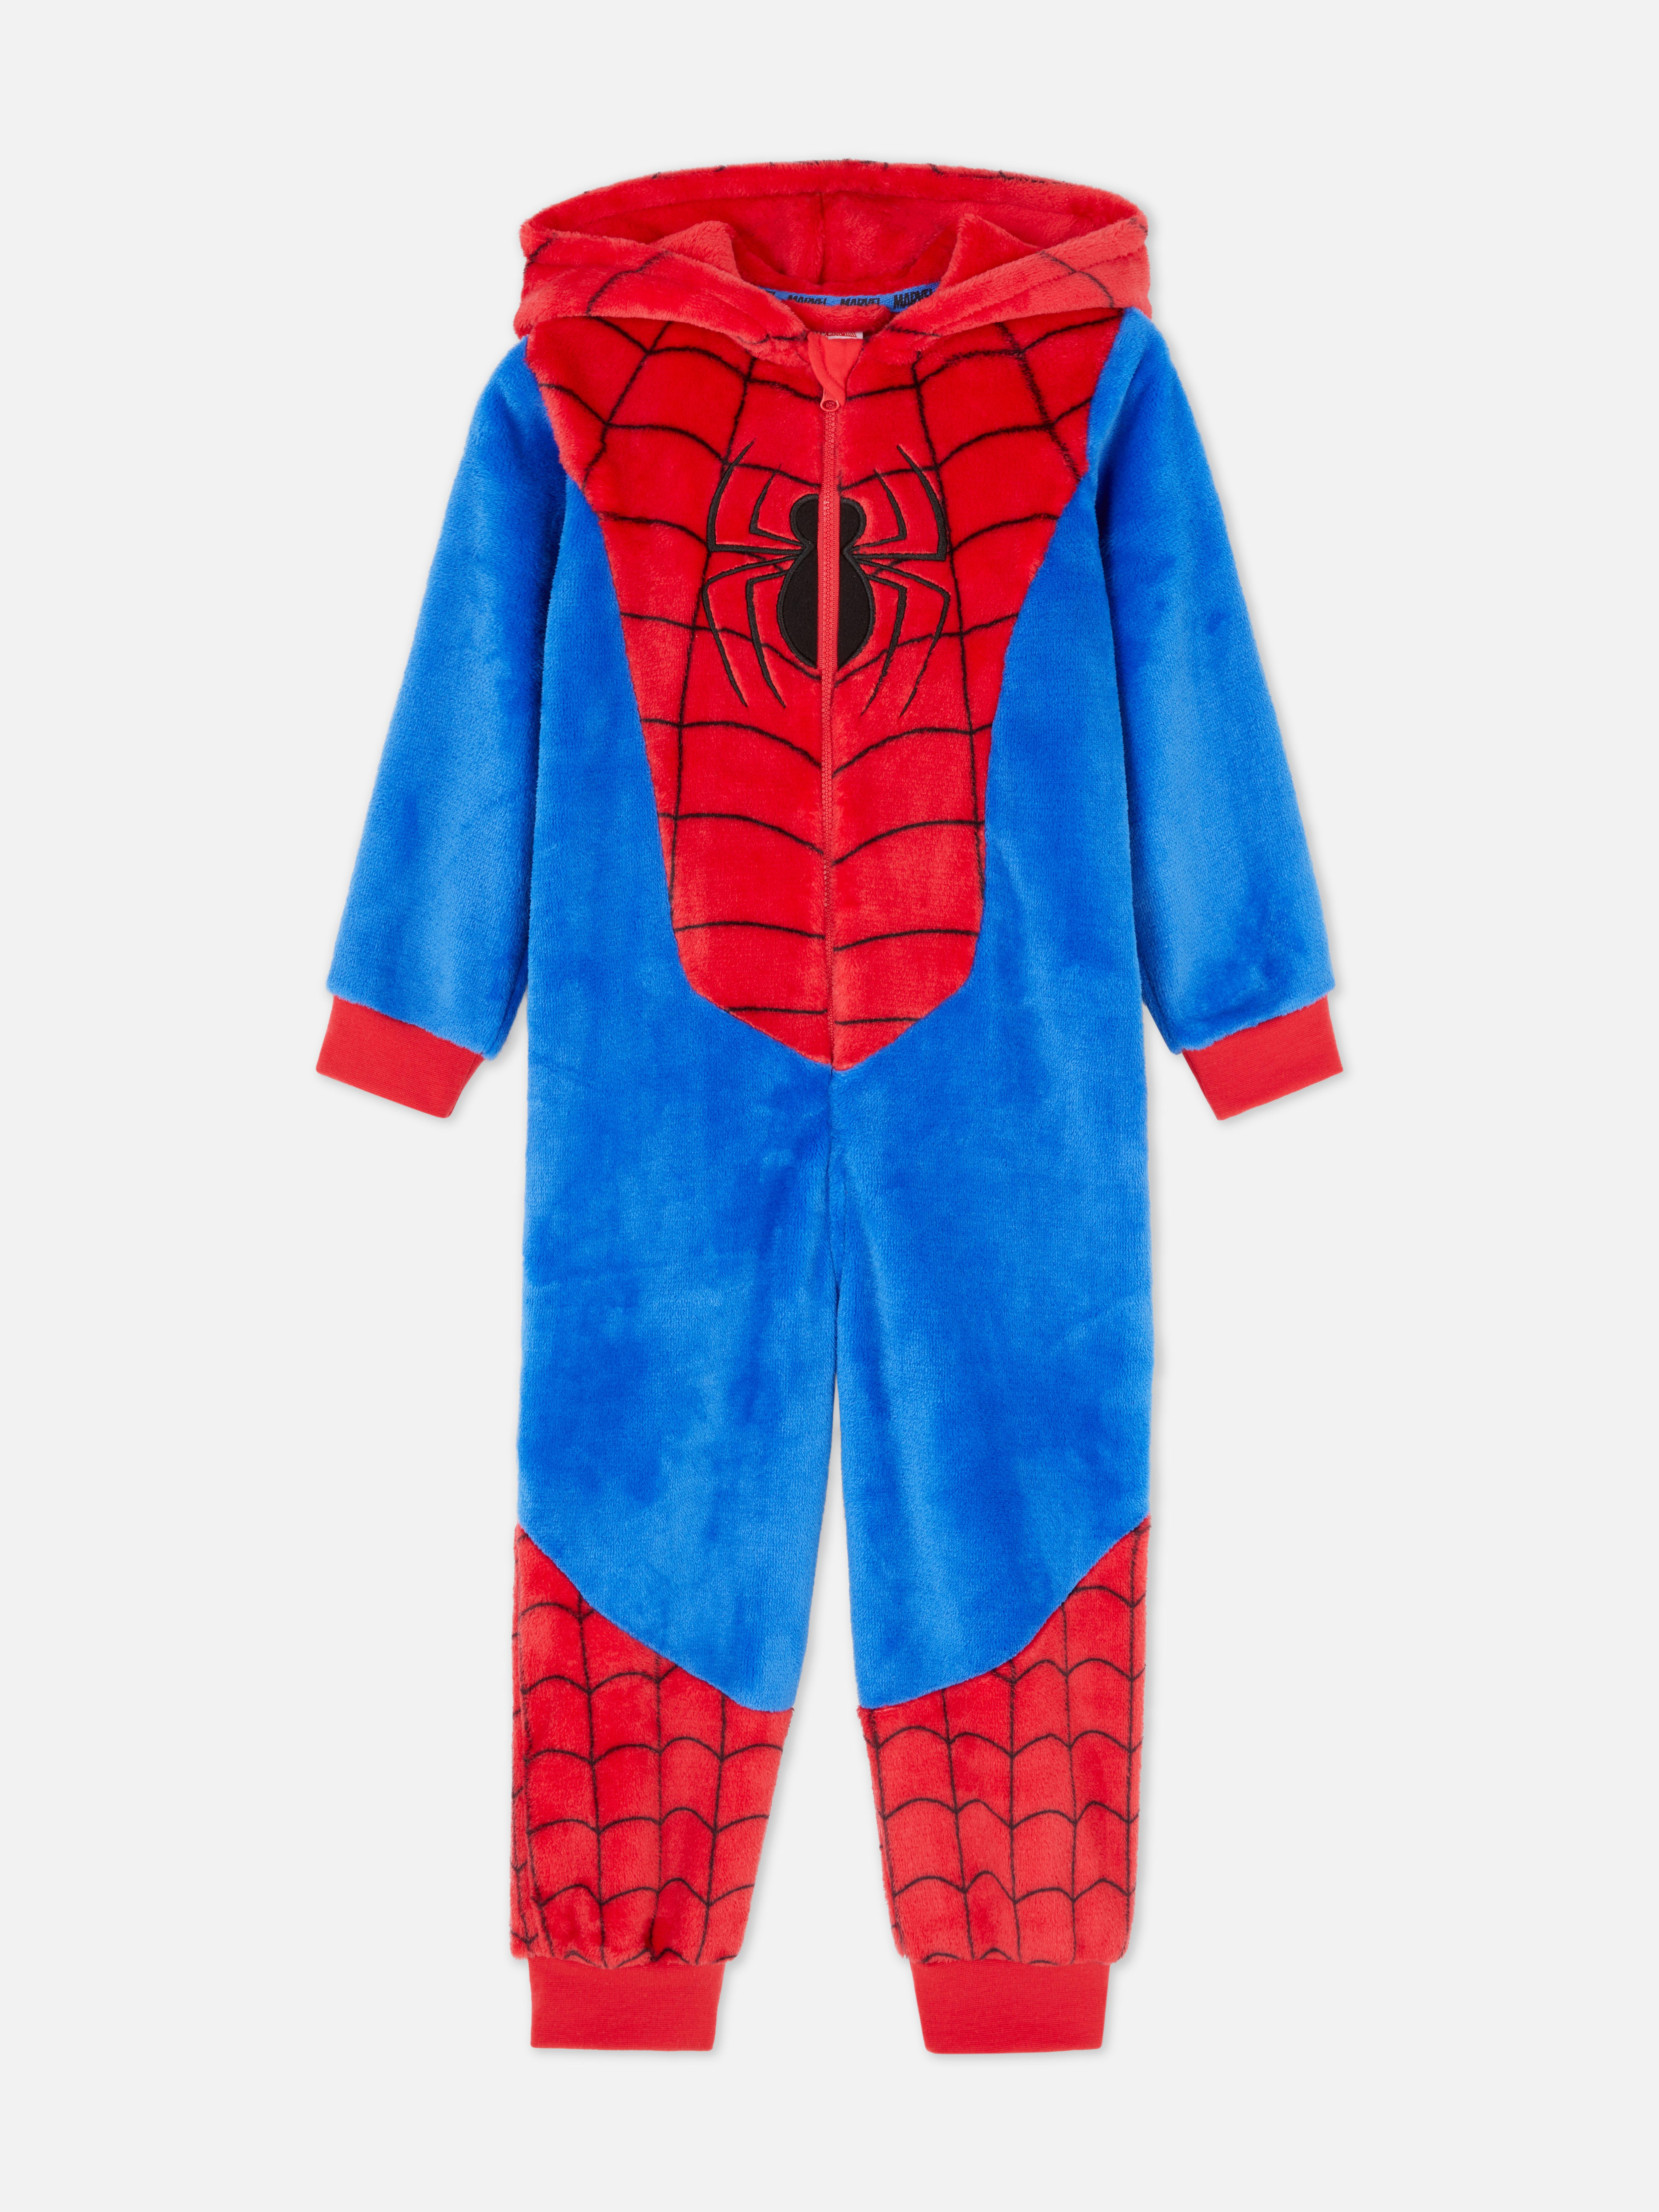 Marvel Spider-Man Dress Up Onesie